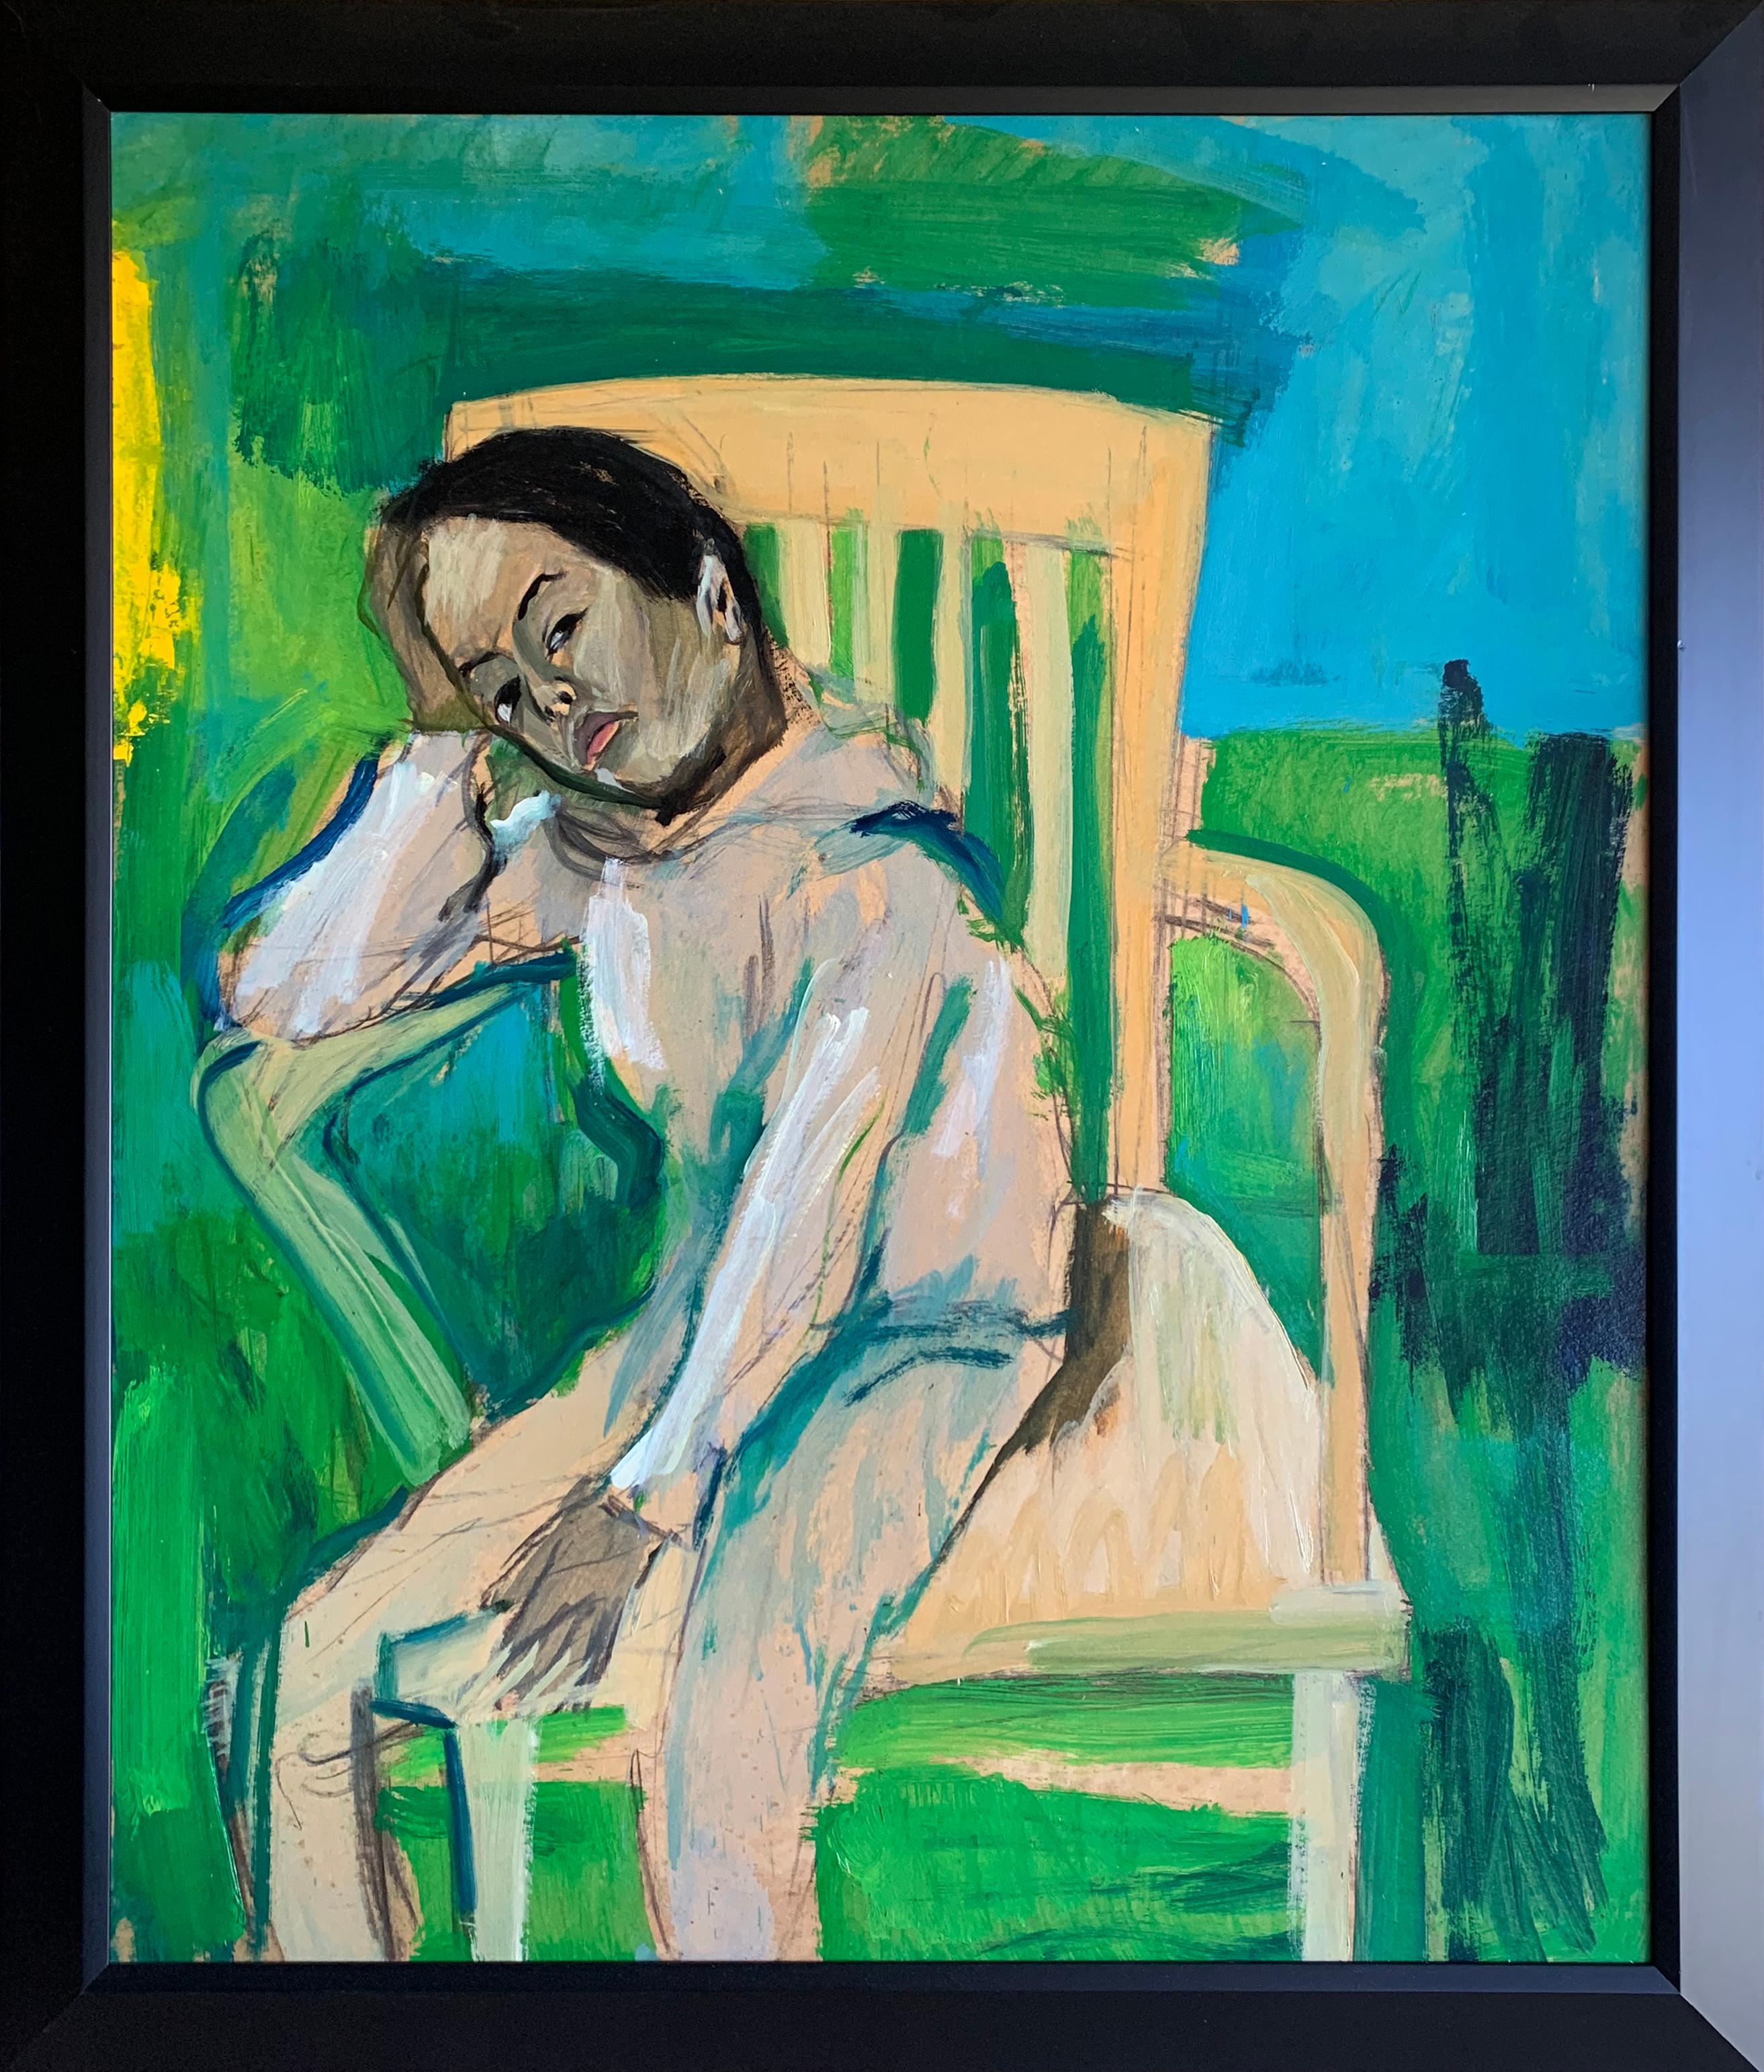 Das ruhende Kind im Stuhl, expressionistisches Porträt des Künstlers aus Philadelphia – Painting von Bernard Harmon